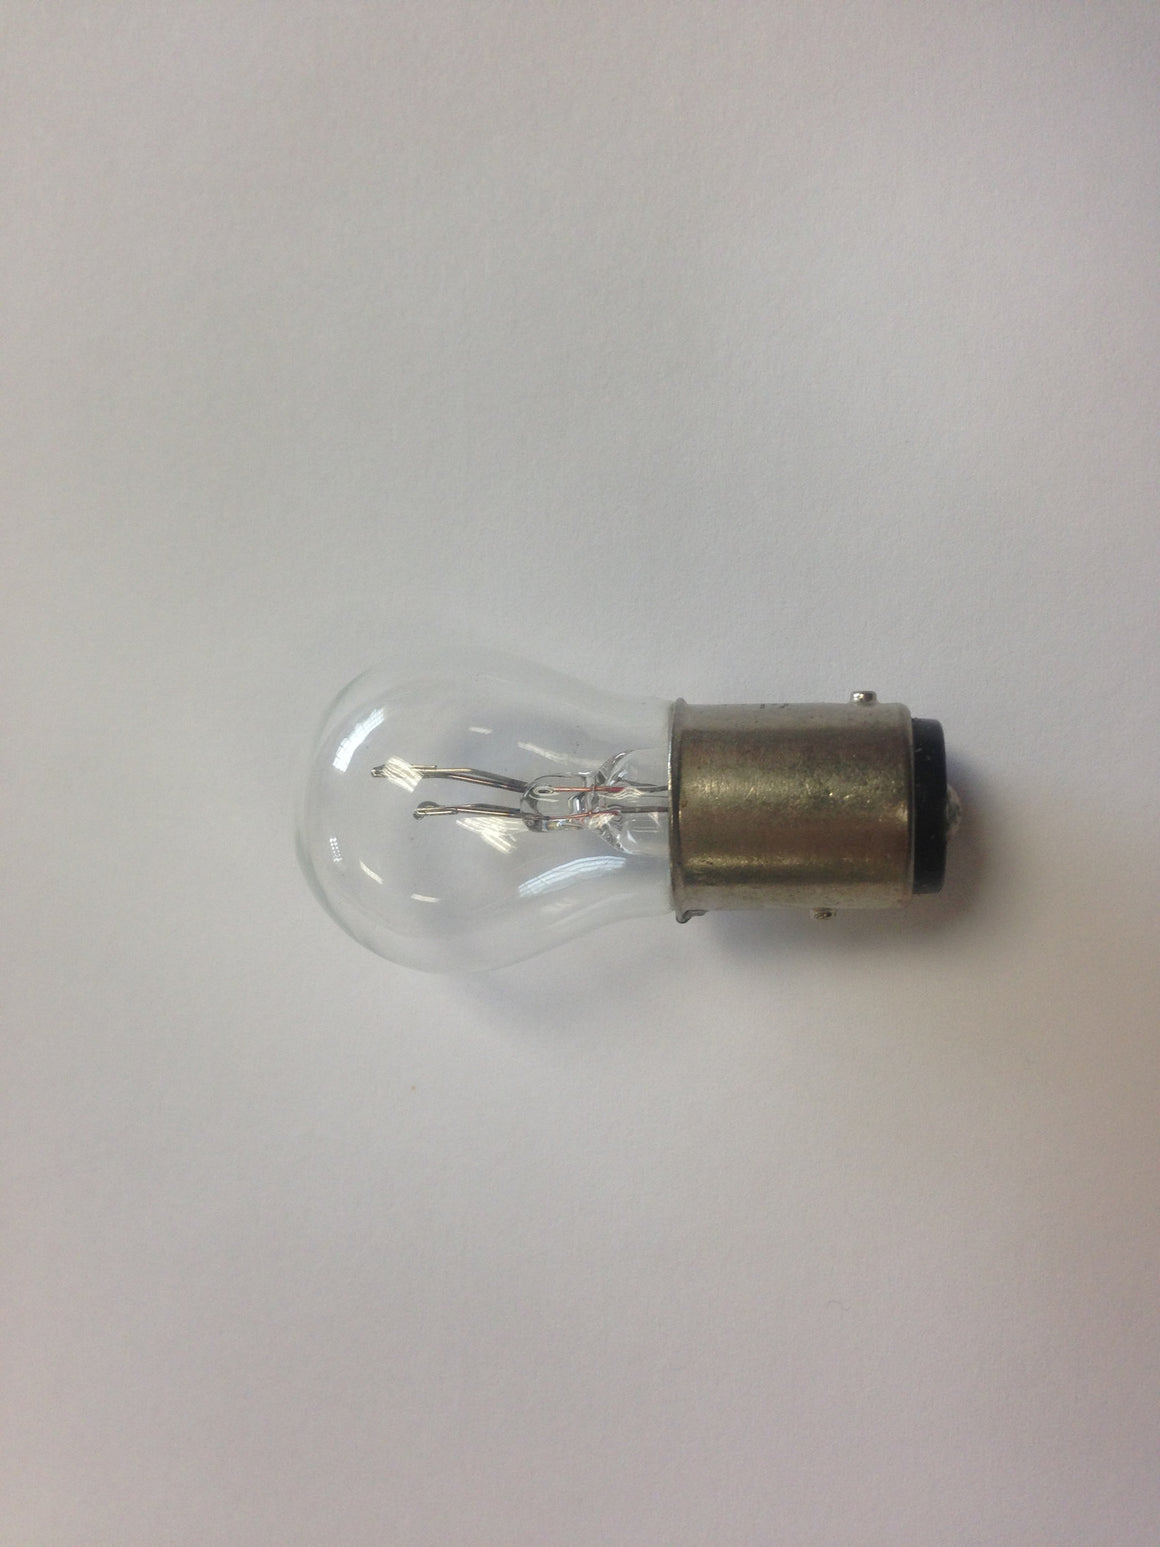 (New) 12V 21/5W Dual Filament Turn Signal / Taillight Bulb 1157